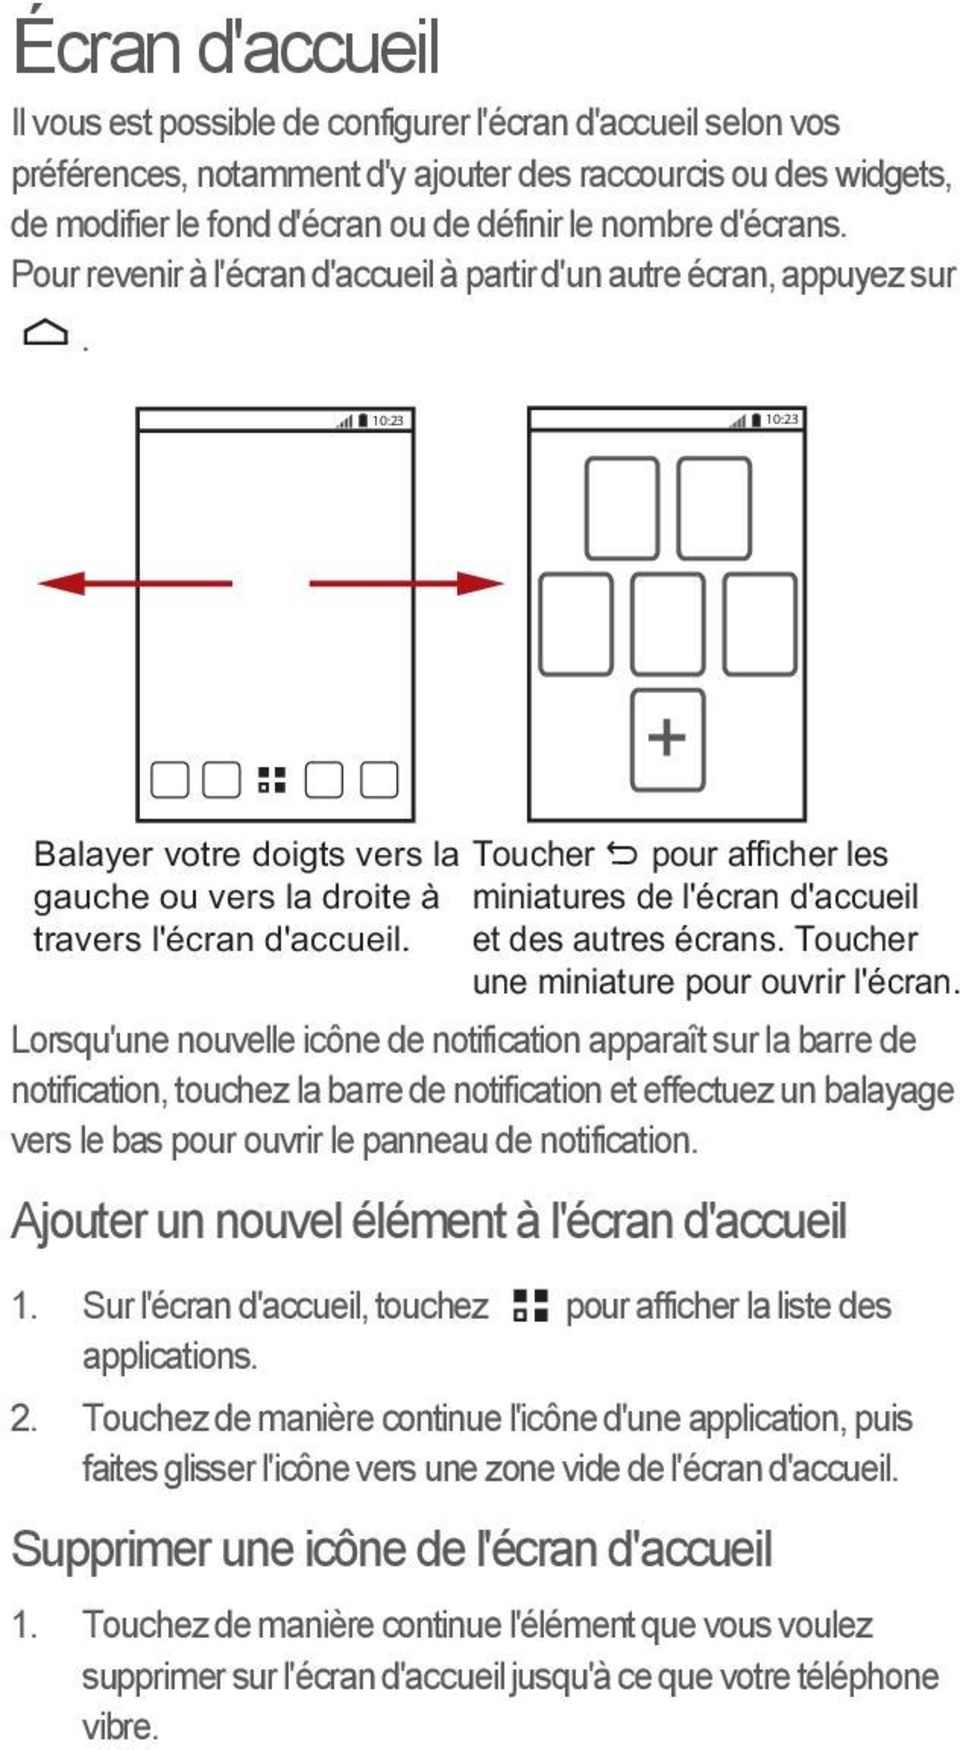 10:23 10:23 Balayer votre doigts vers la Toucher pour afficher les gauche ou vers la droite à miniatures de l'écran d'accueil travers l'écran d'accueil. et des autres écrans.